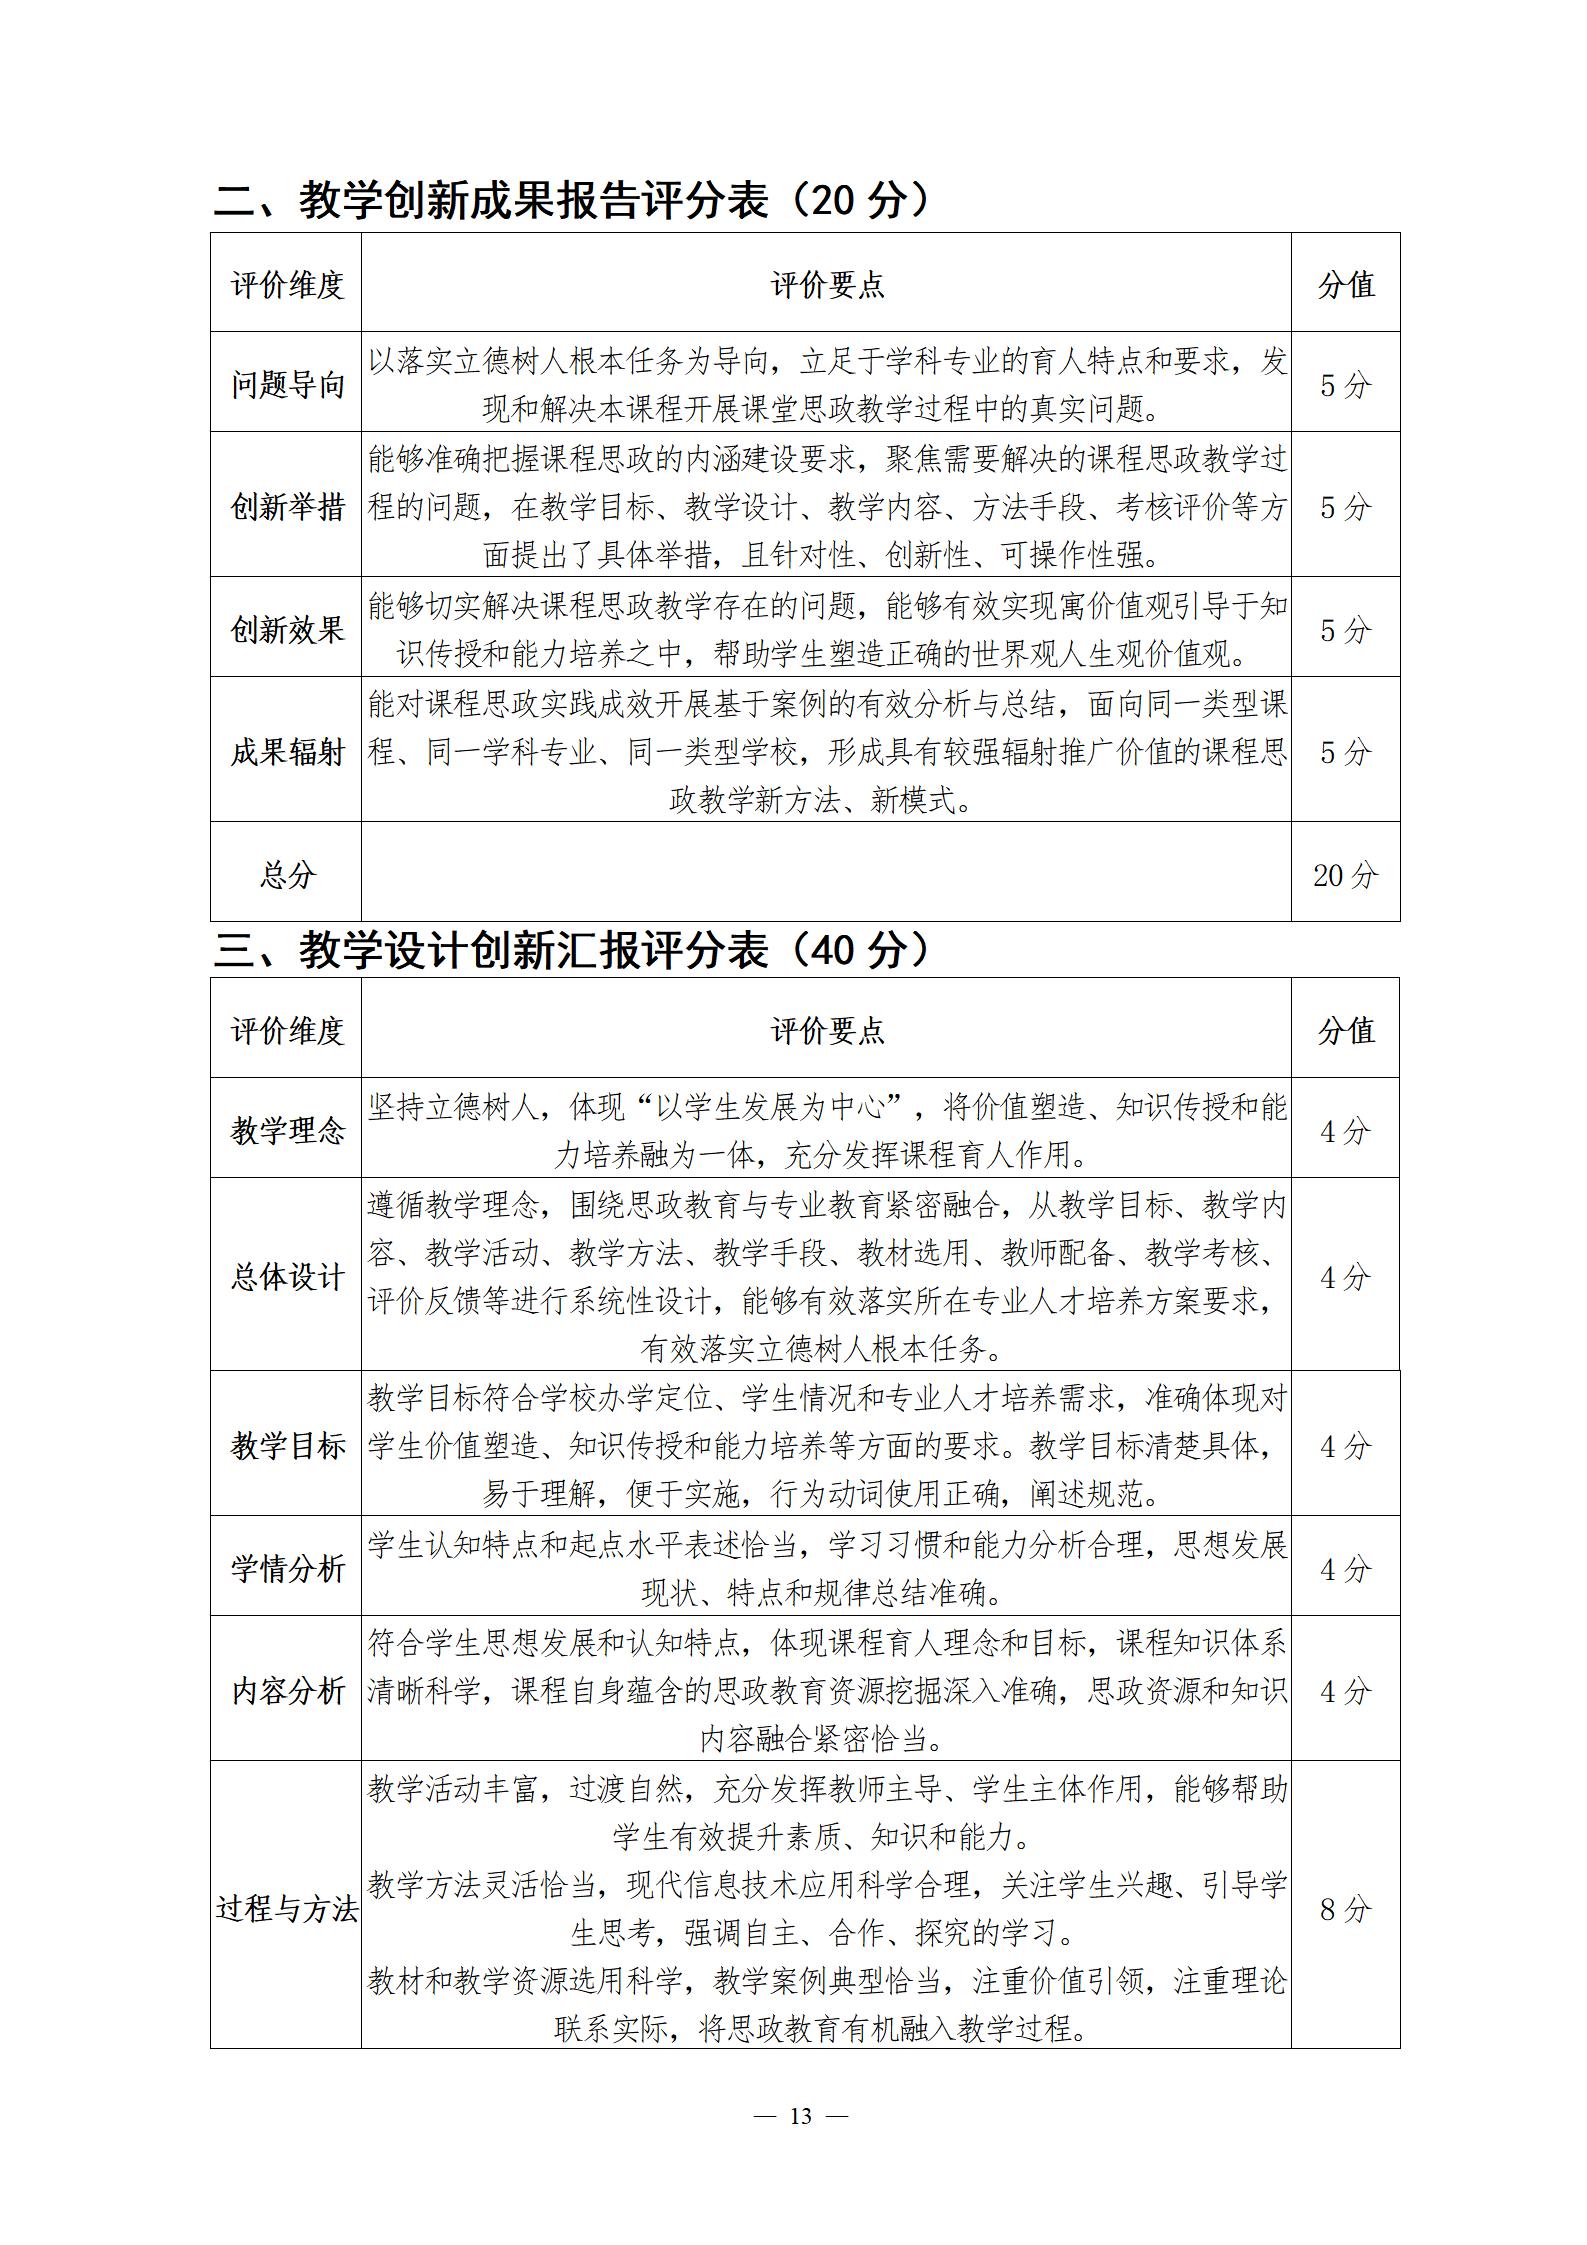 关于举办第四届湖北省高校教师教学创新大赛的通知_13.jpg